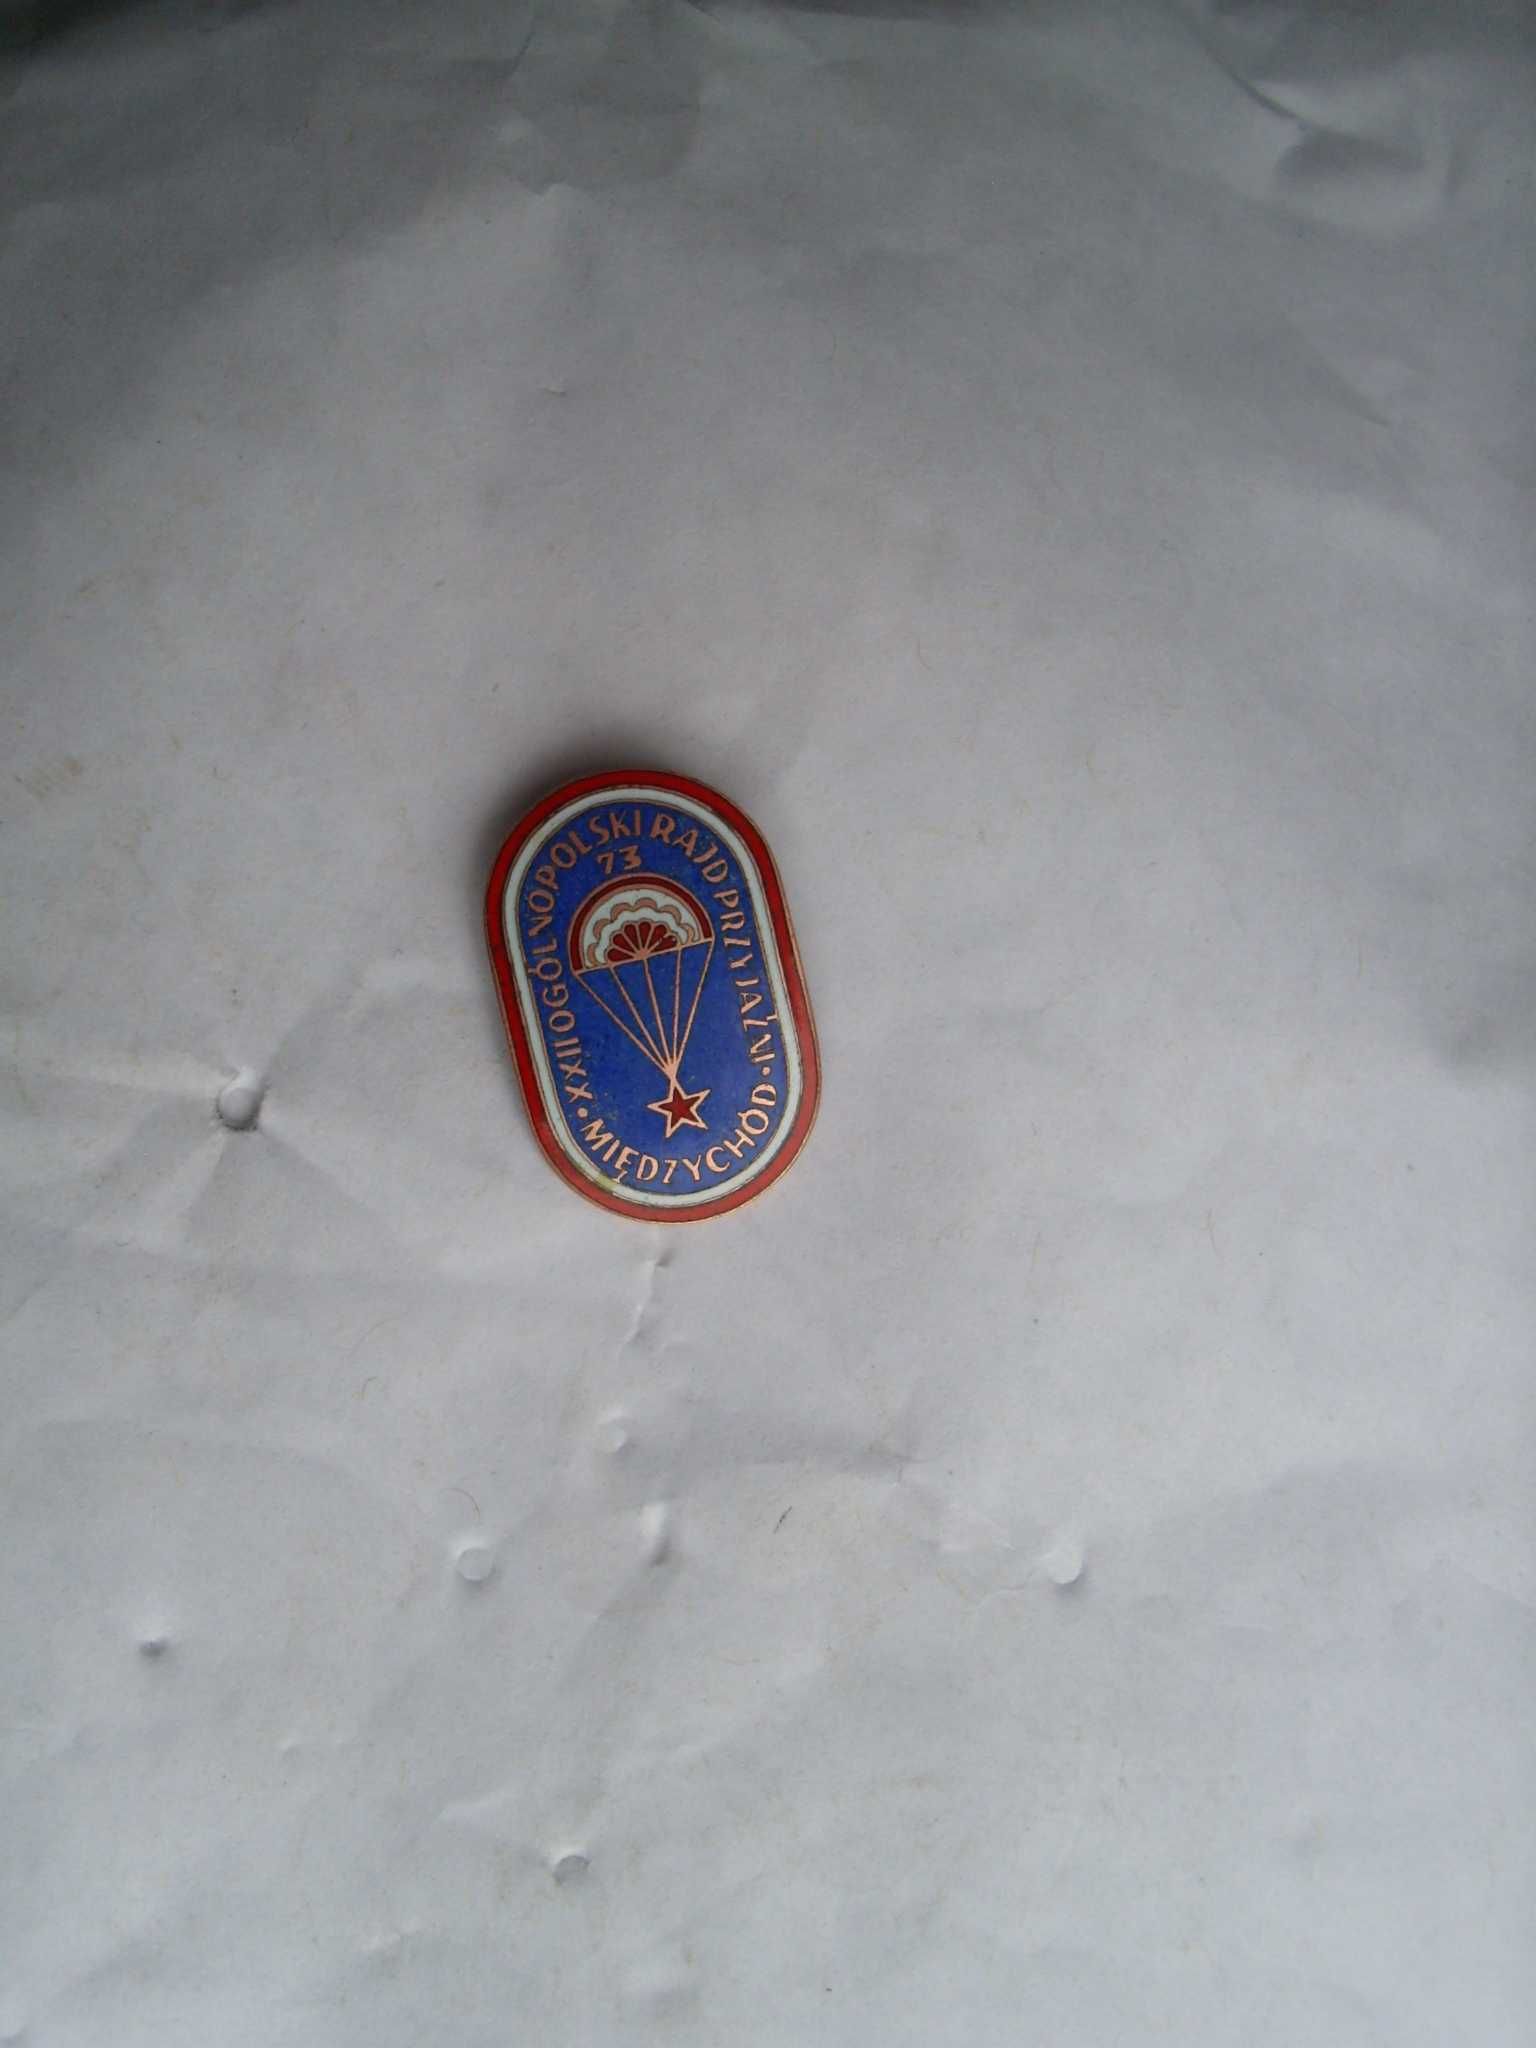 Odznaka XXII Rajd Przyjażni 1973 Międzychód